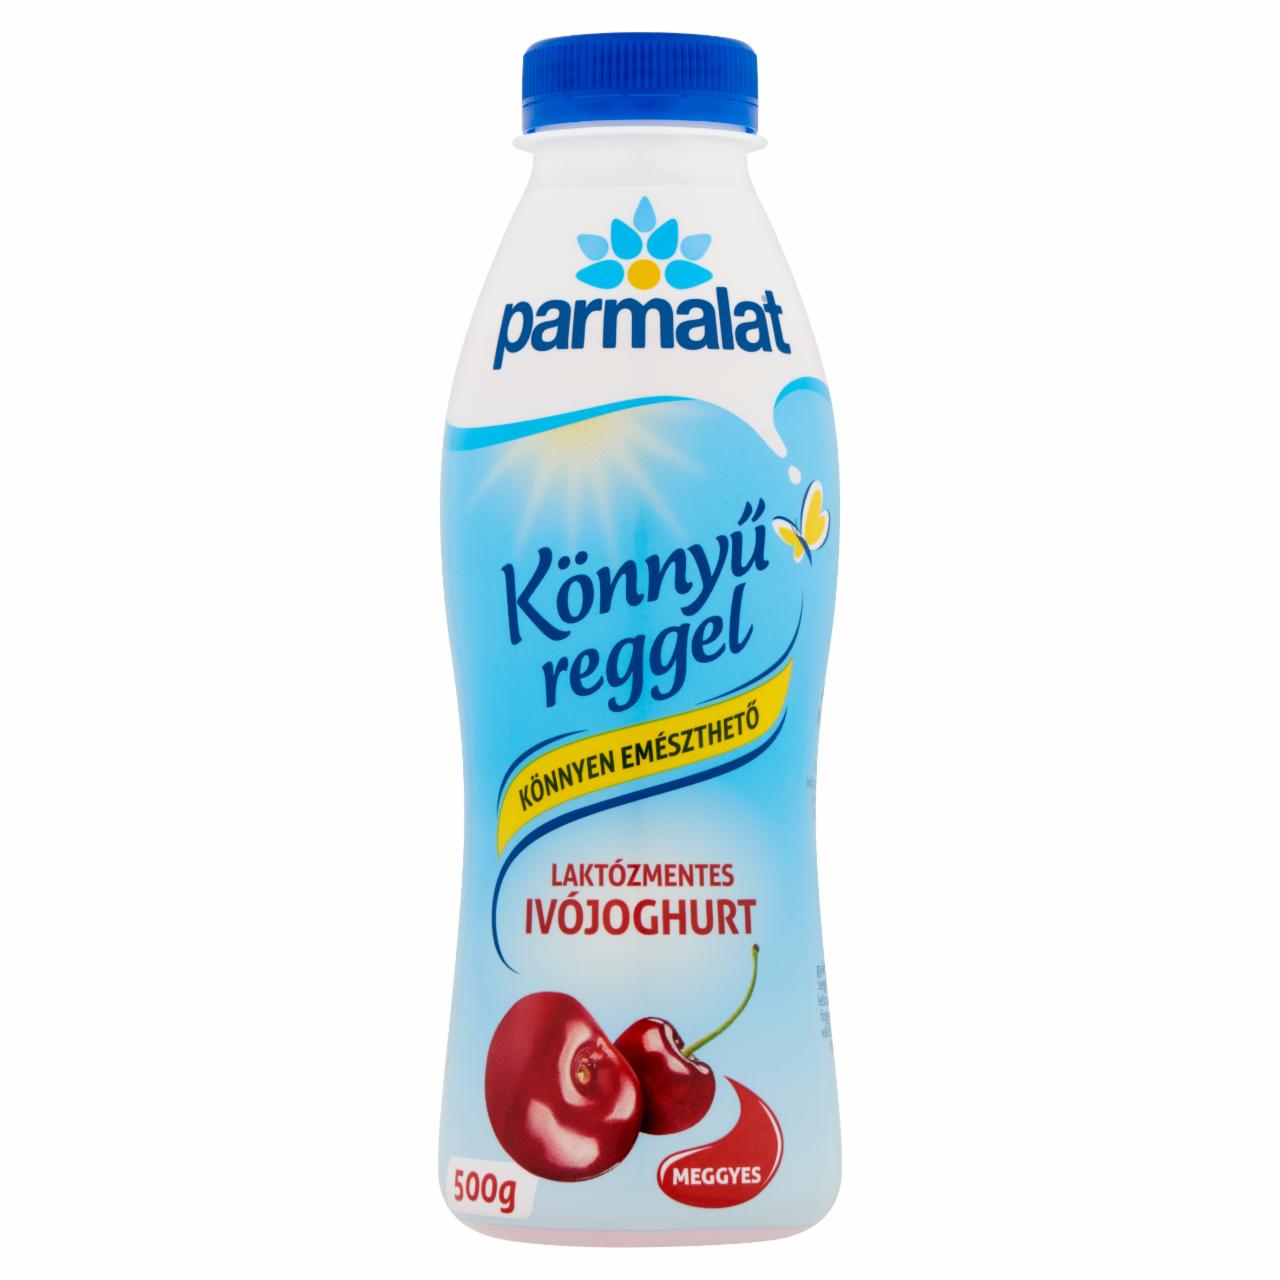 Képek - Parmalat laktózmentes, zsírszegény, meggyes ivójoghurt 500 g